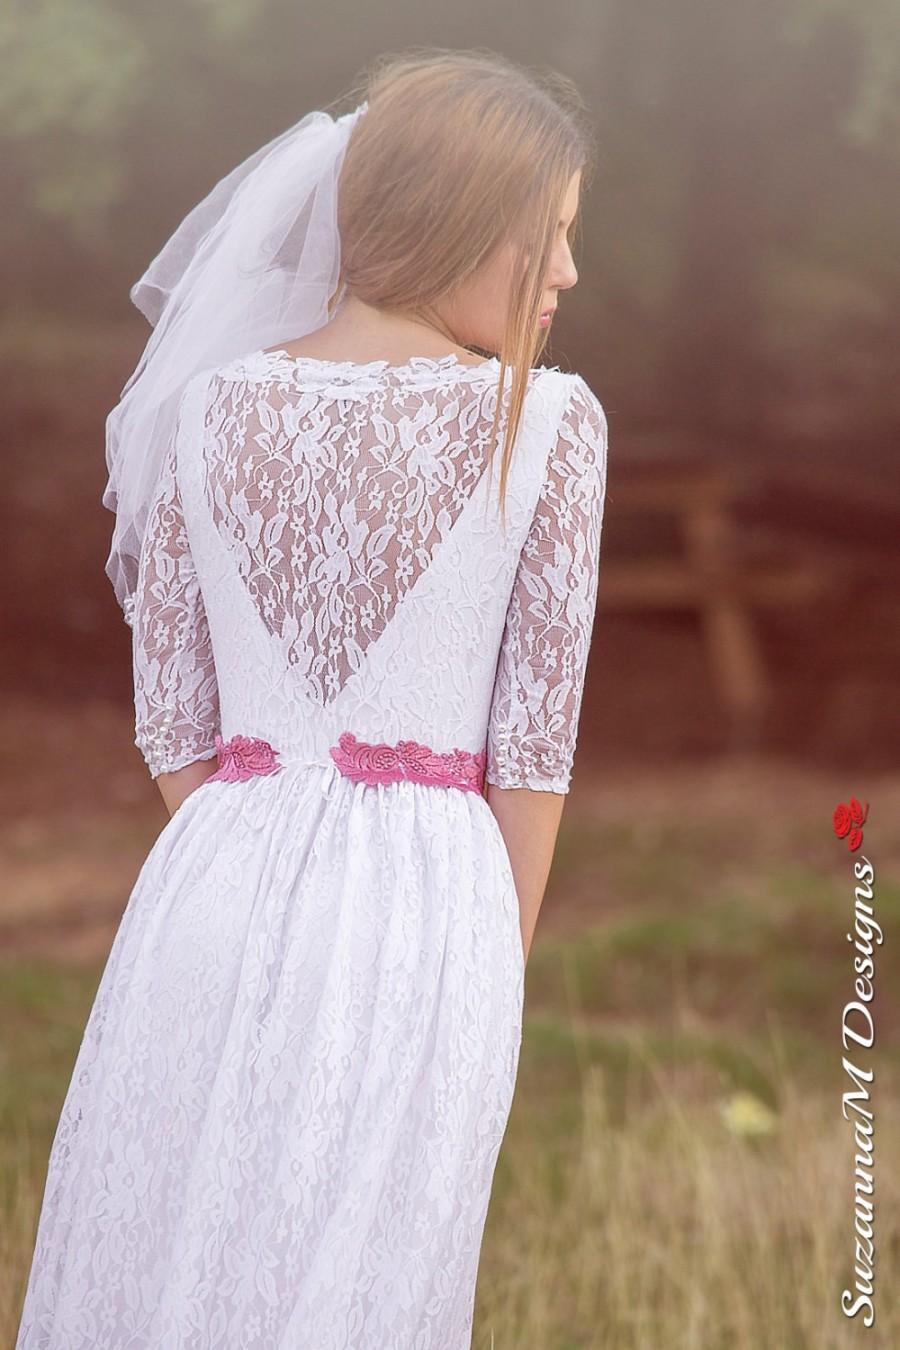 زفاف - White Lace Wedding Dress Romantic Lace Wedding Gown Long Wedding Gown Long Sleeve Wedding Dress - Handmade By SuzannaM Designs